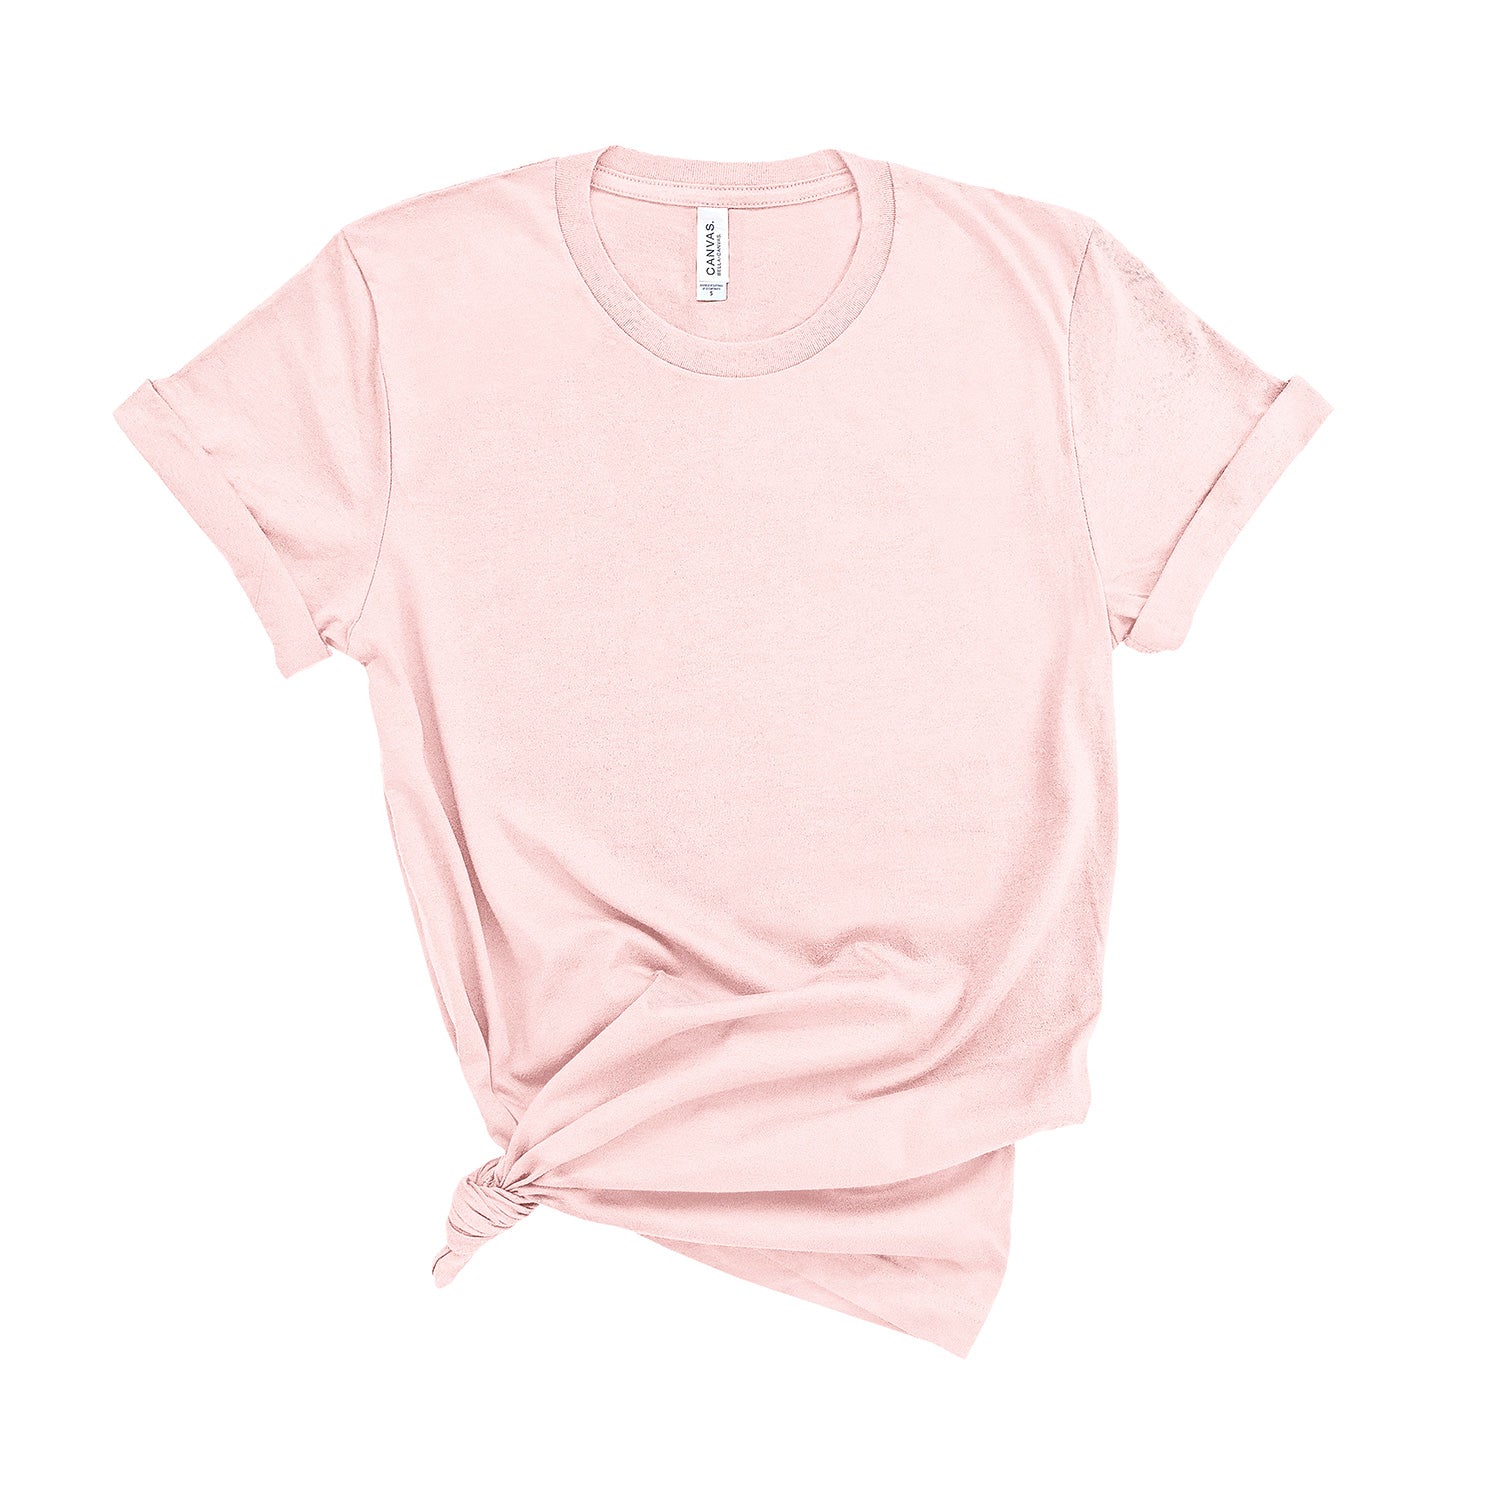 100% Super-Soft Cotton T-Shirt - Kids Sizes - Wholesale-Wholesale-Kelham Print